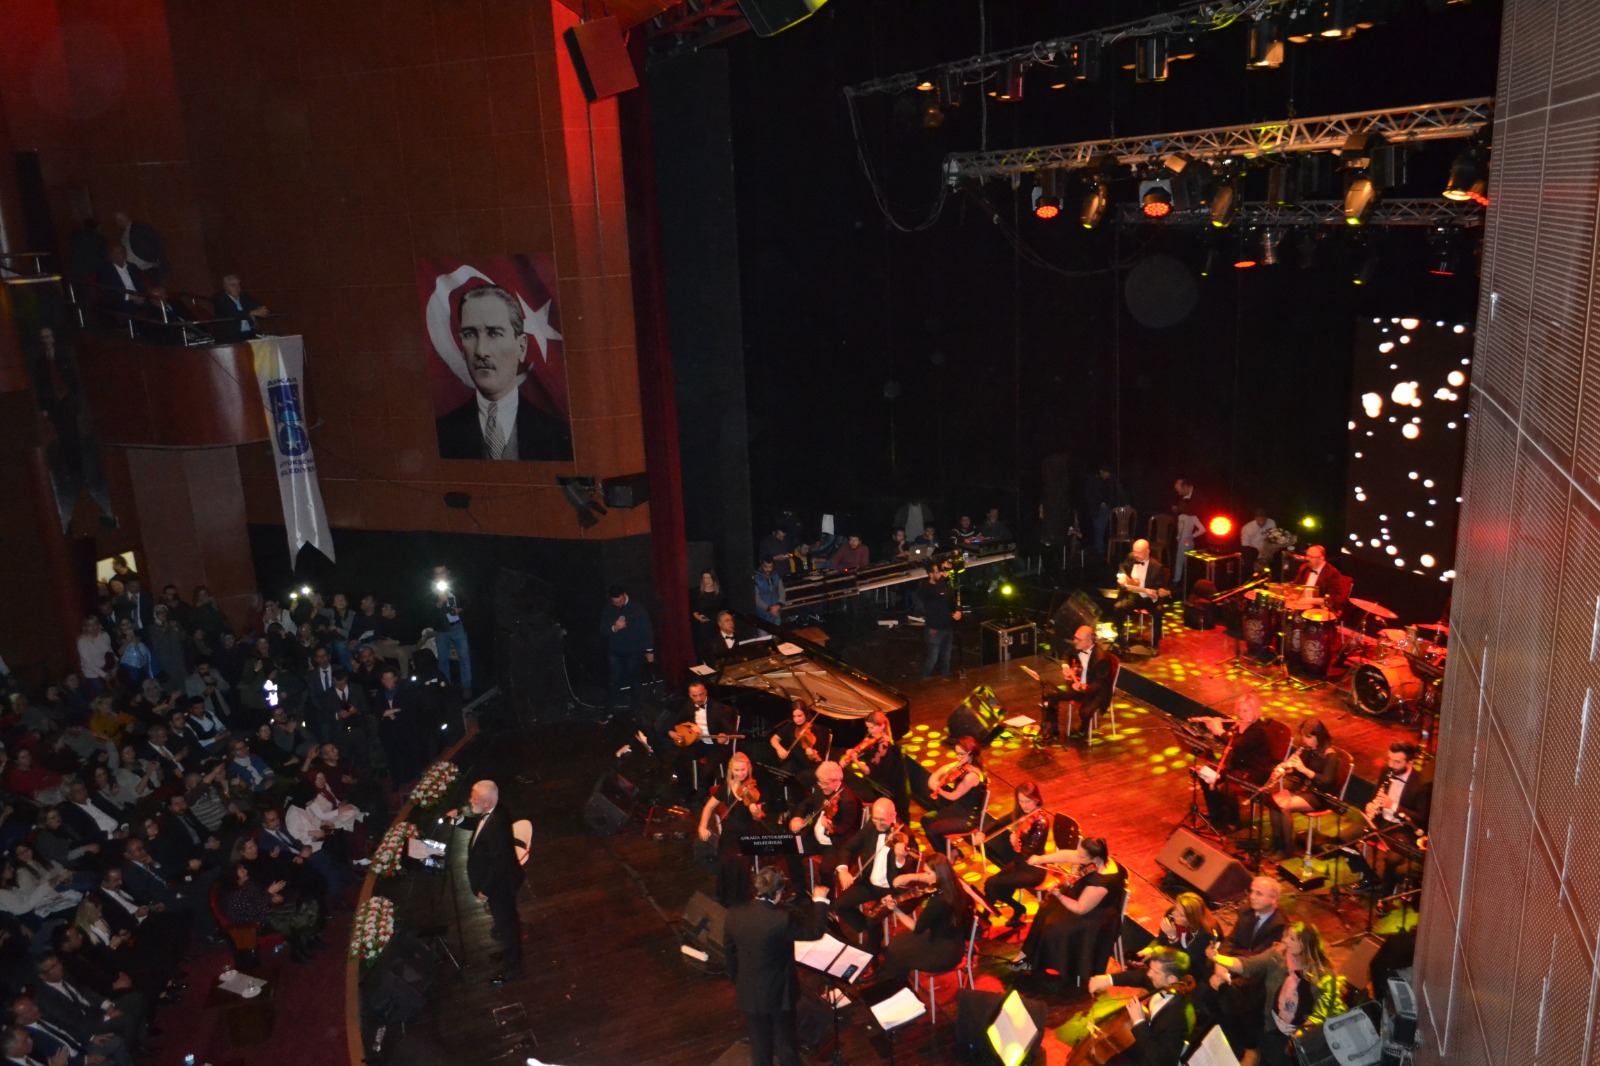 Usta sanatçı Onur Akın, “Romantik Şarkılar” konserinde Başkentlilerle buluştu.